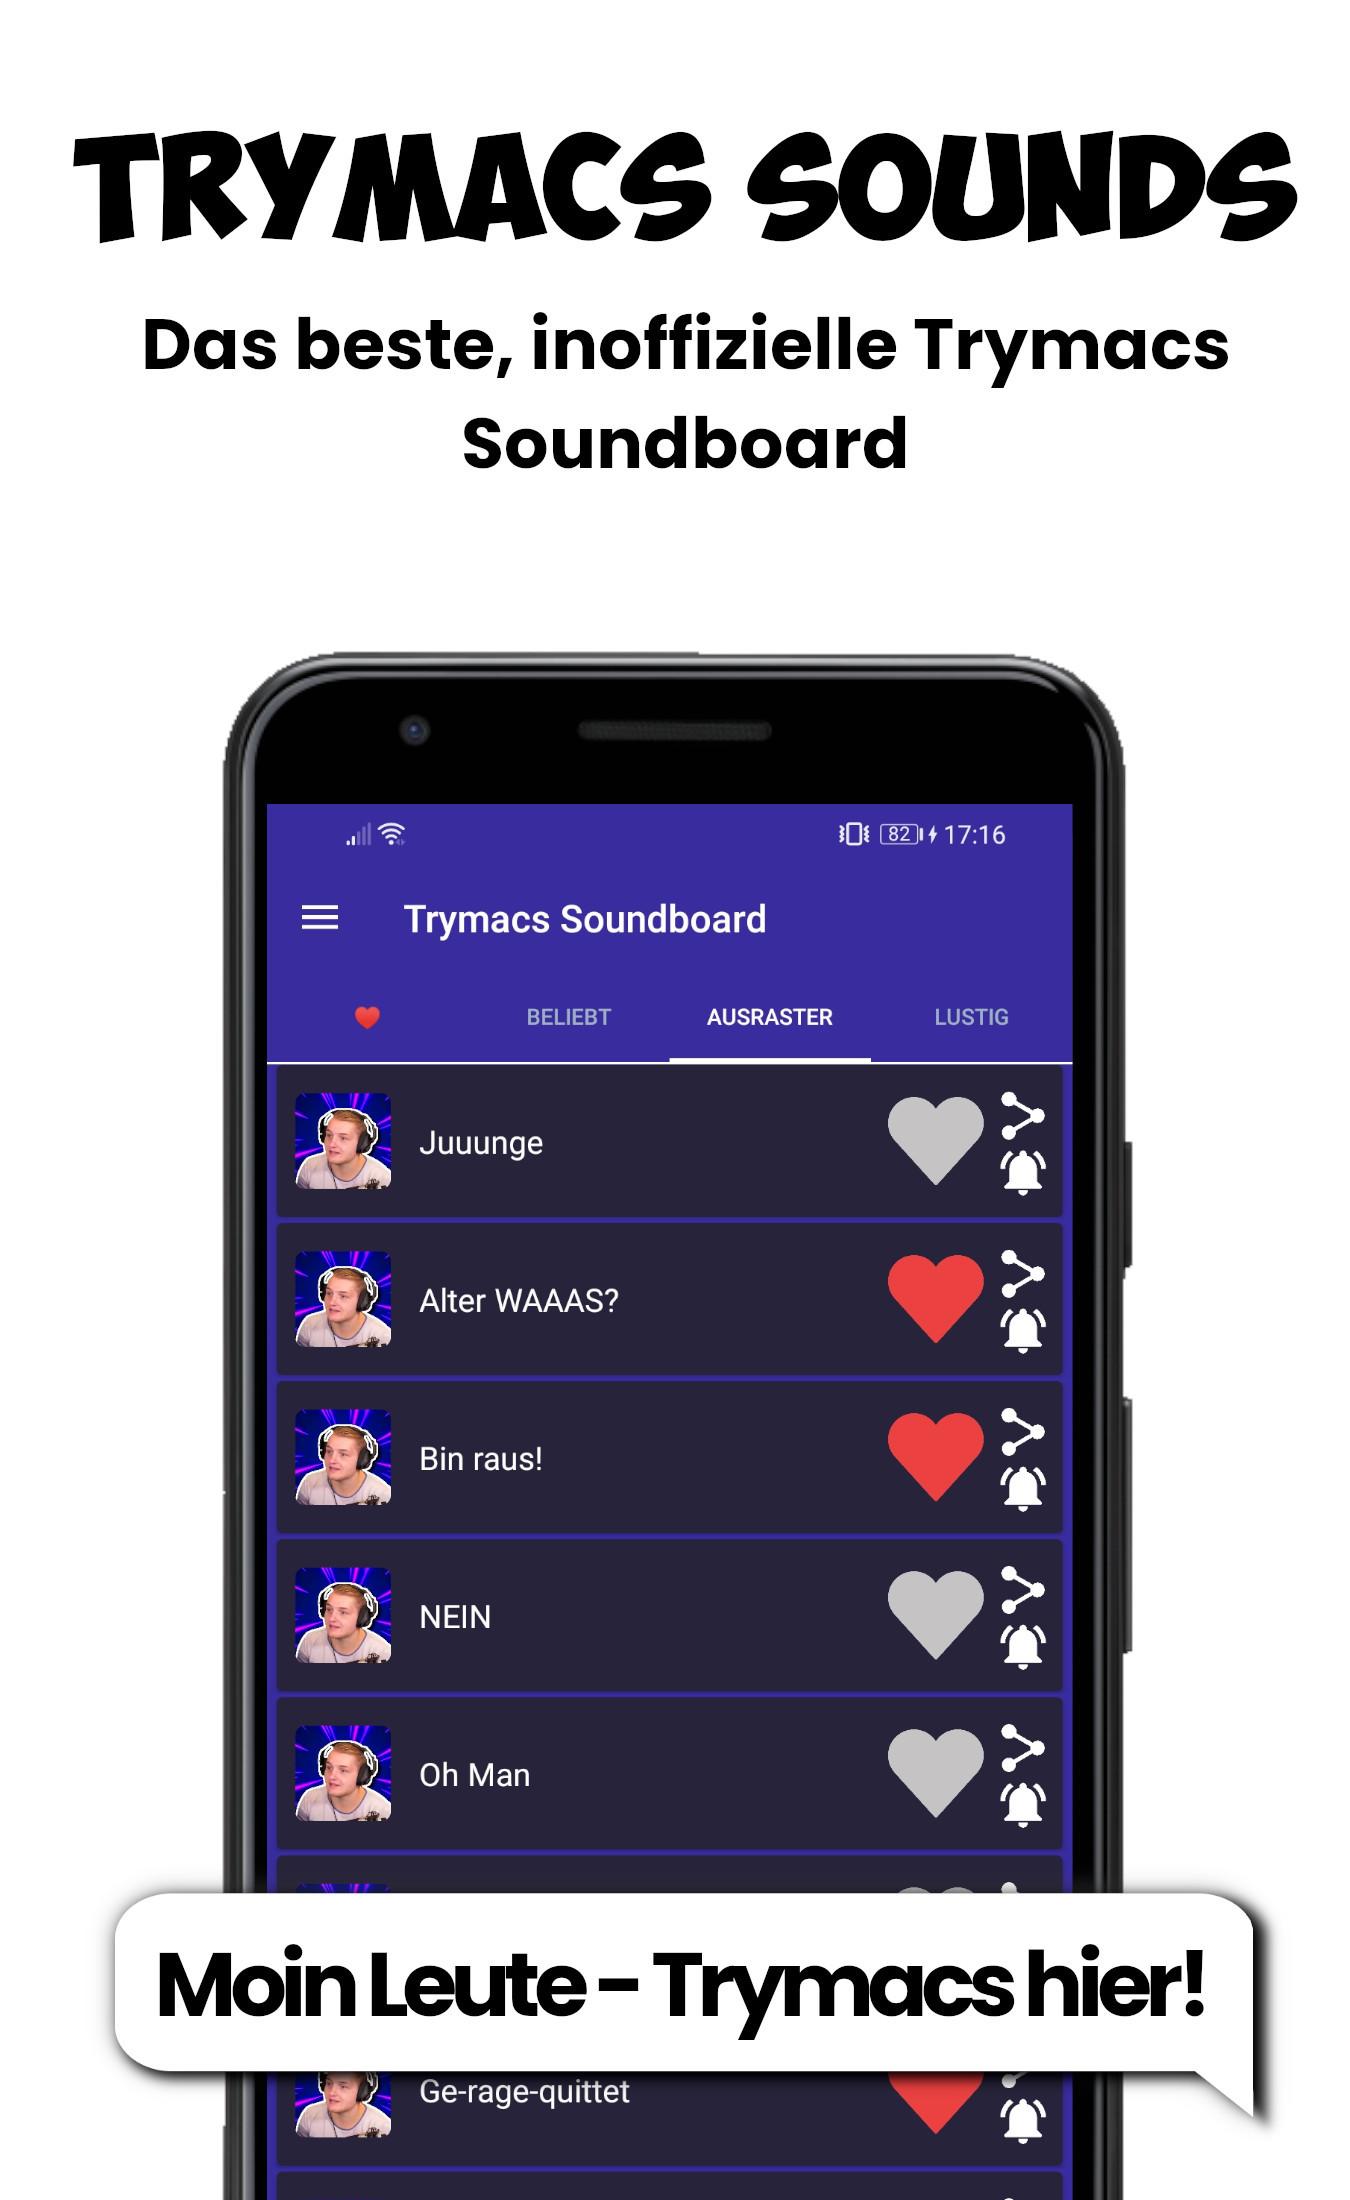 دانلود برنامه Instant Buttons: The Best Soundboard App برای اندروید